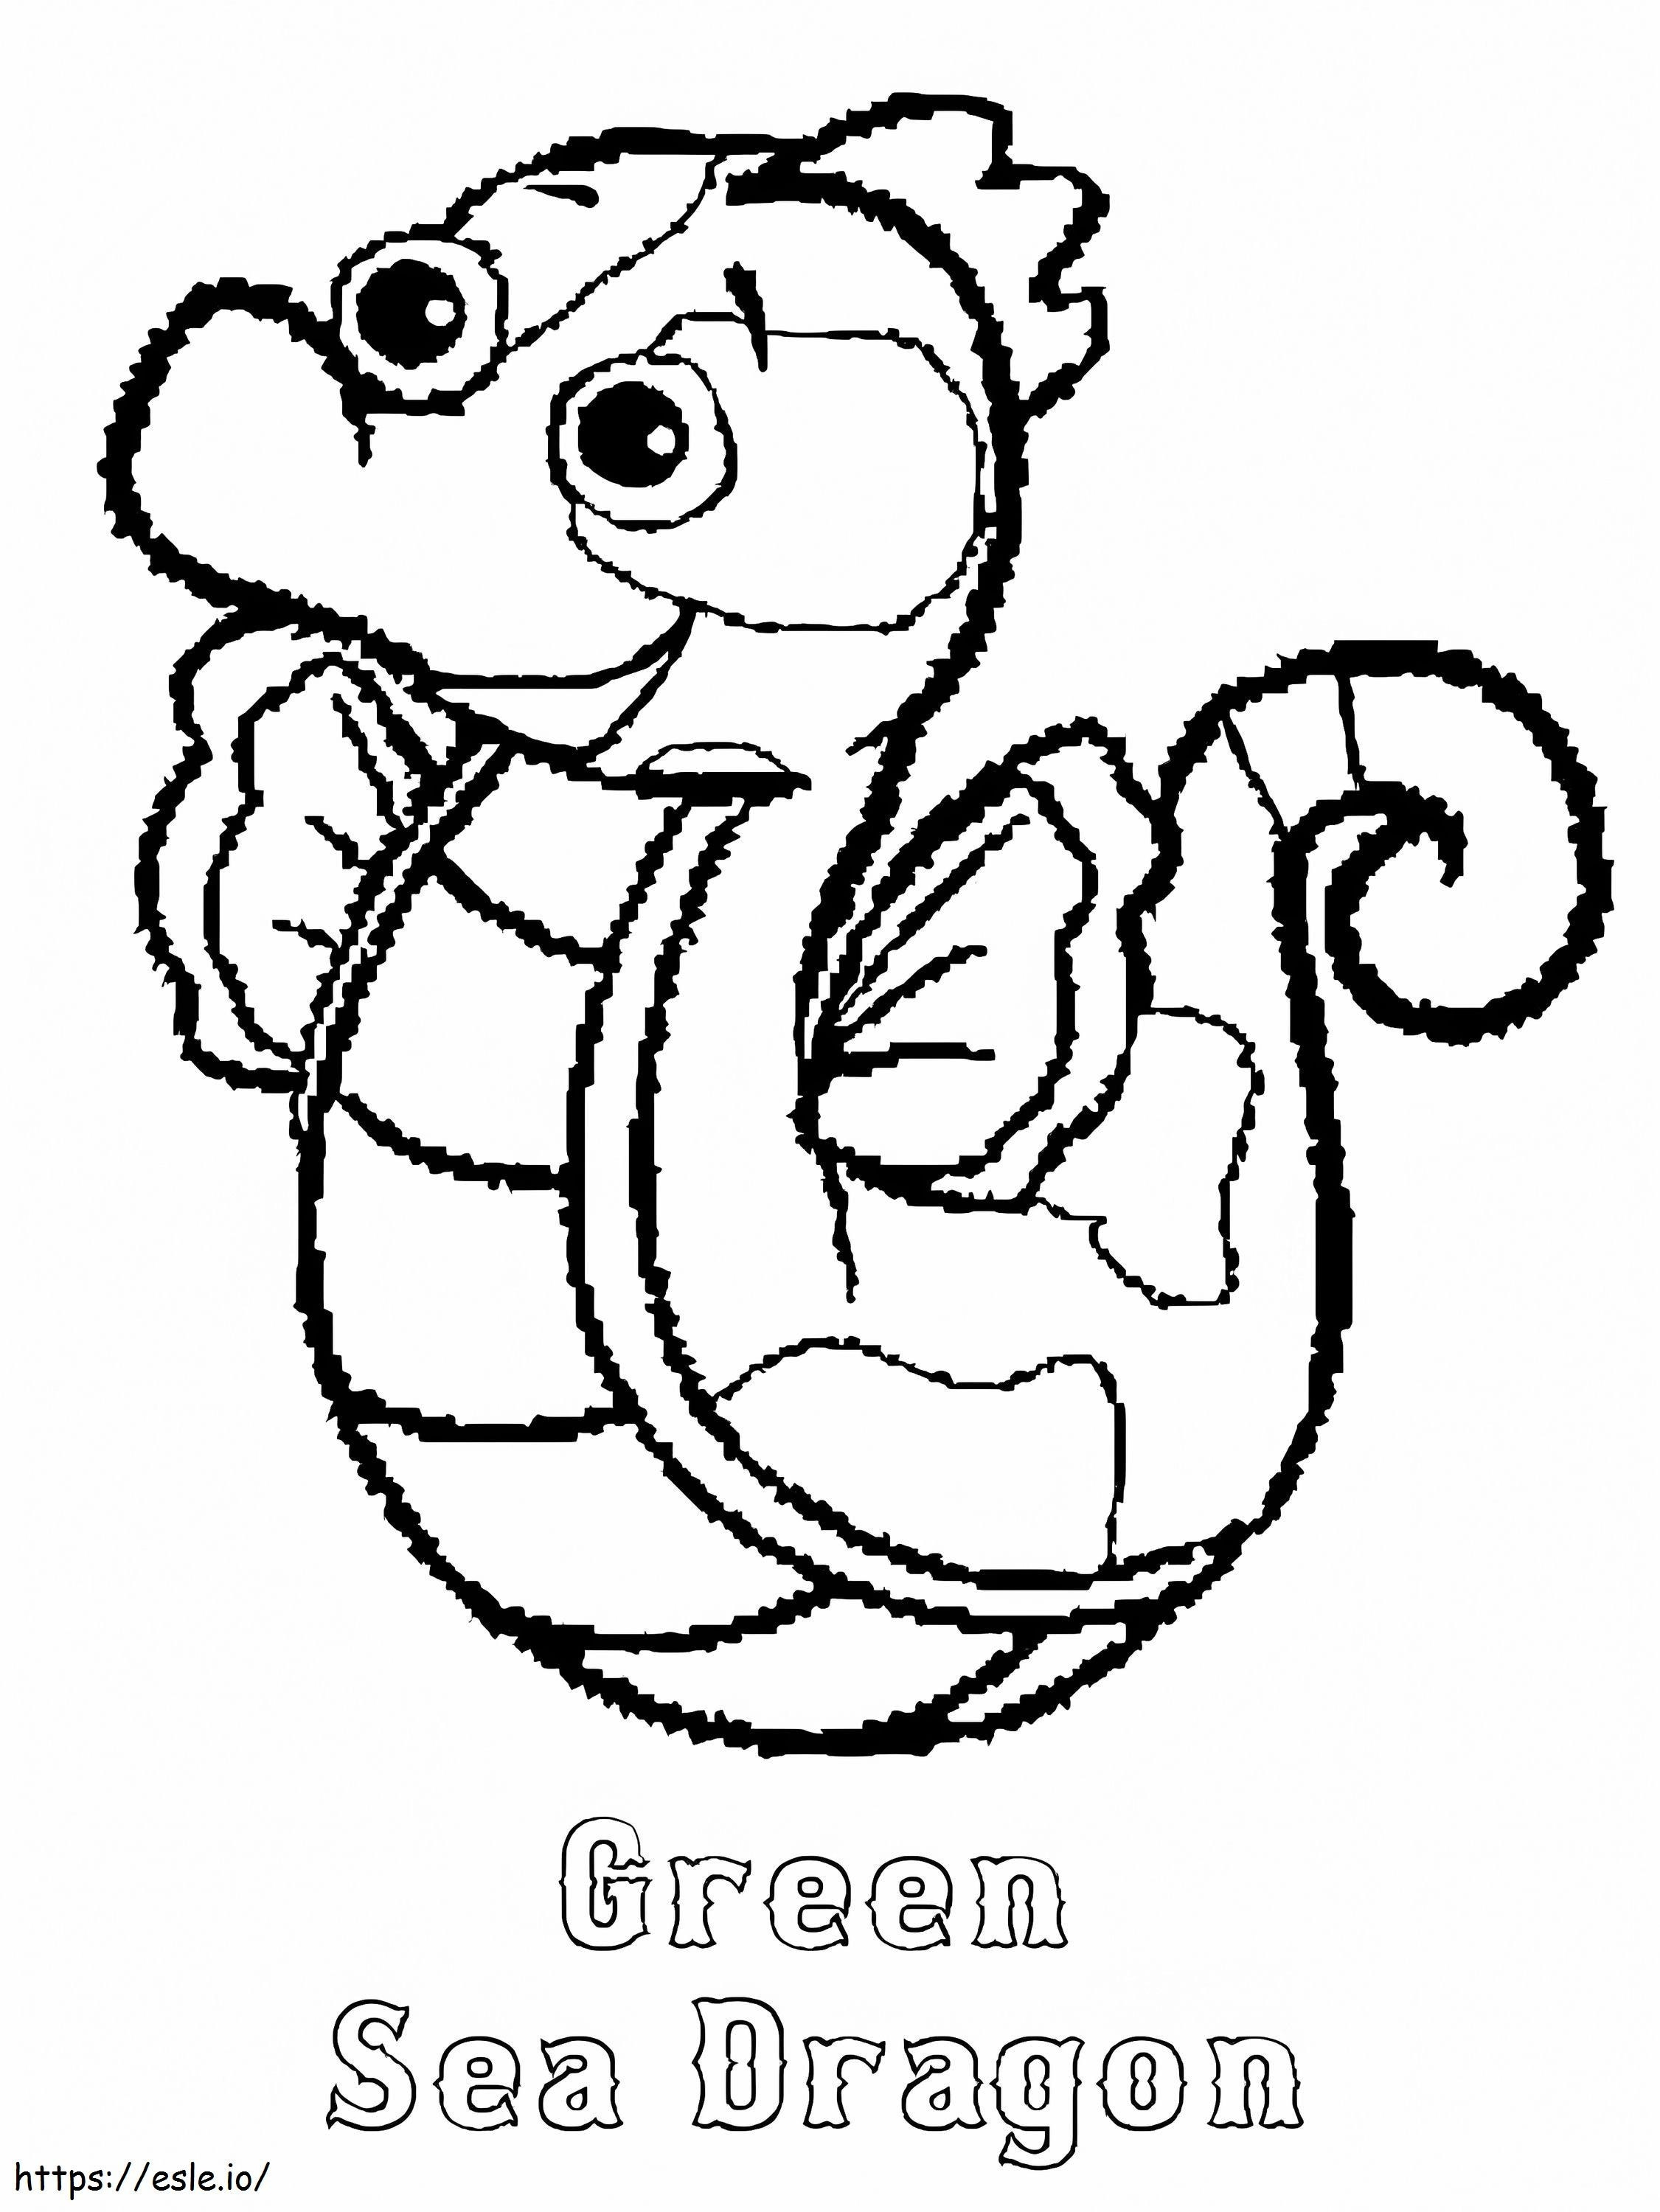 Green Sea Dragon Webkinz coloring page